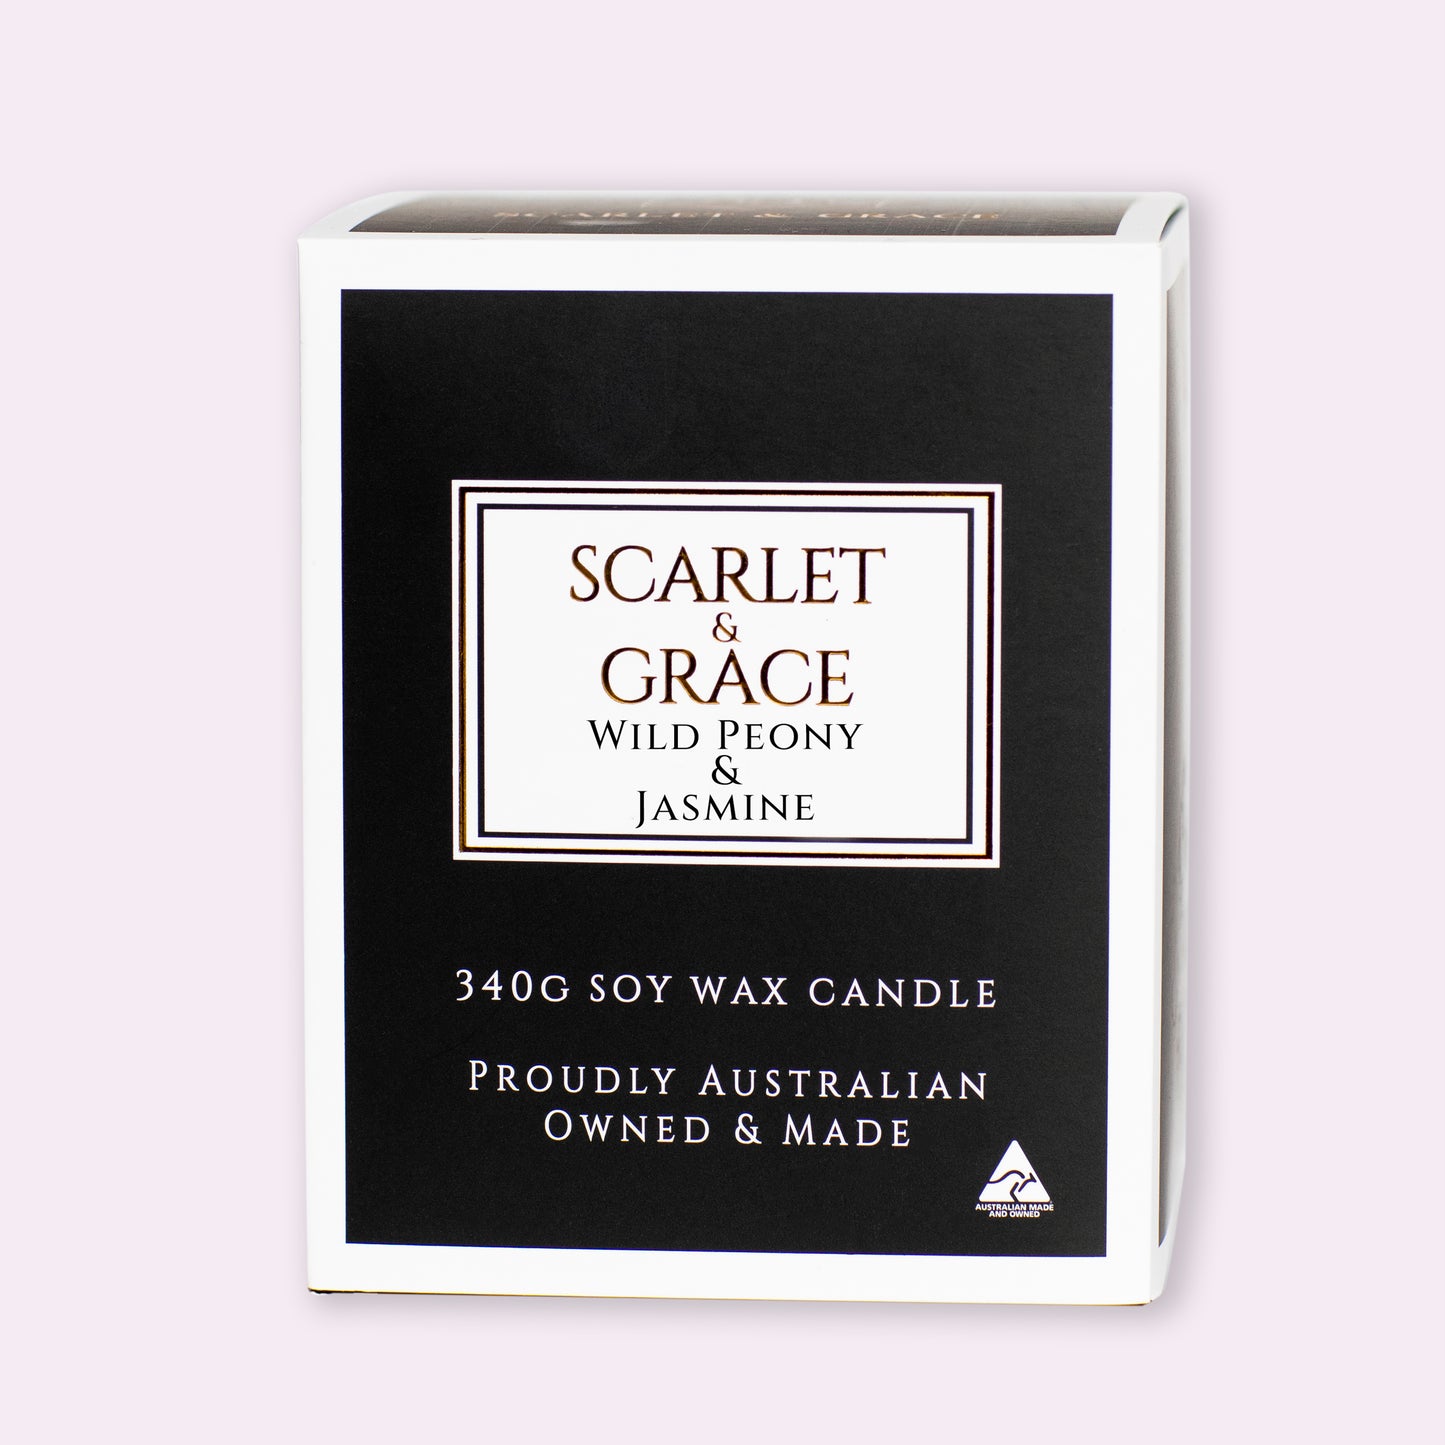 Wild Peony & Jasmine - 340gm Soy Wax Candle - Scarlet & Grace